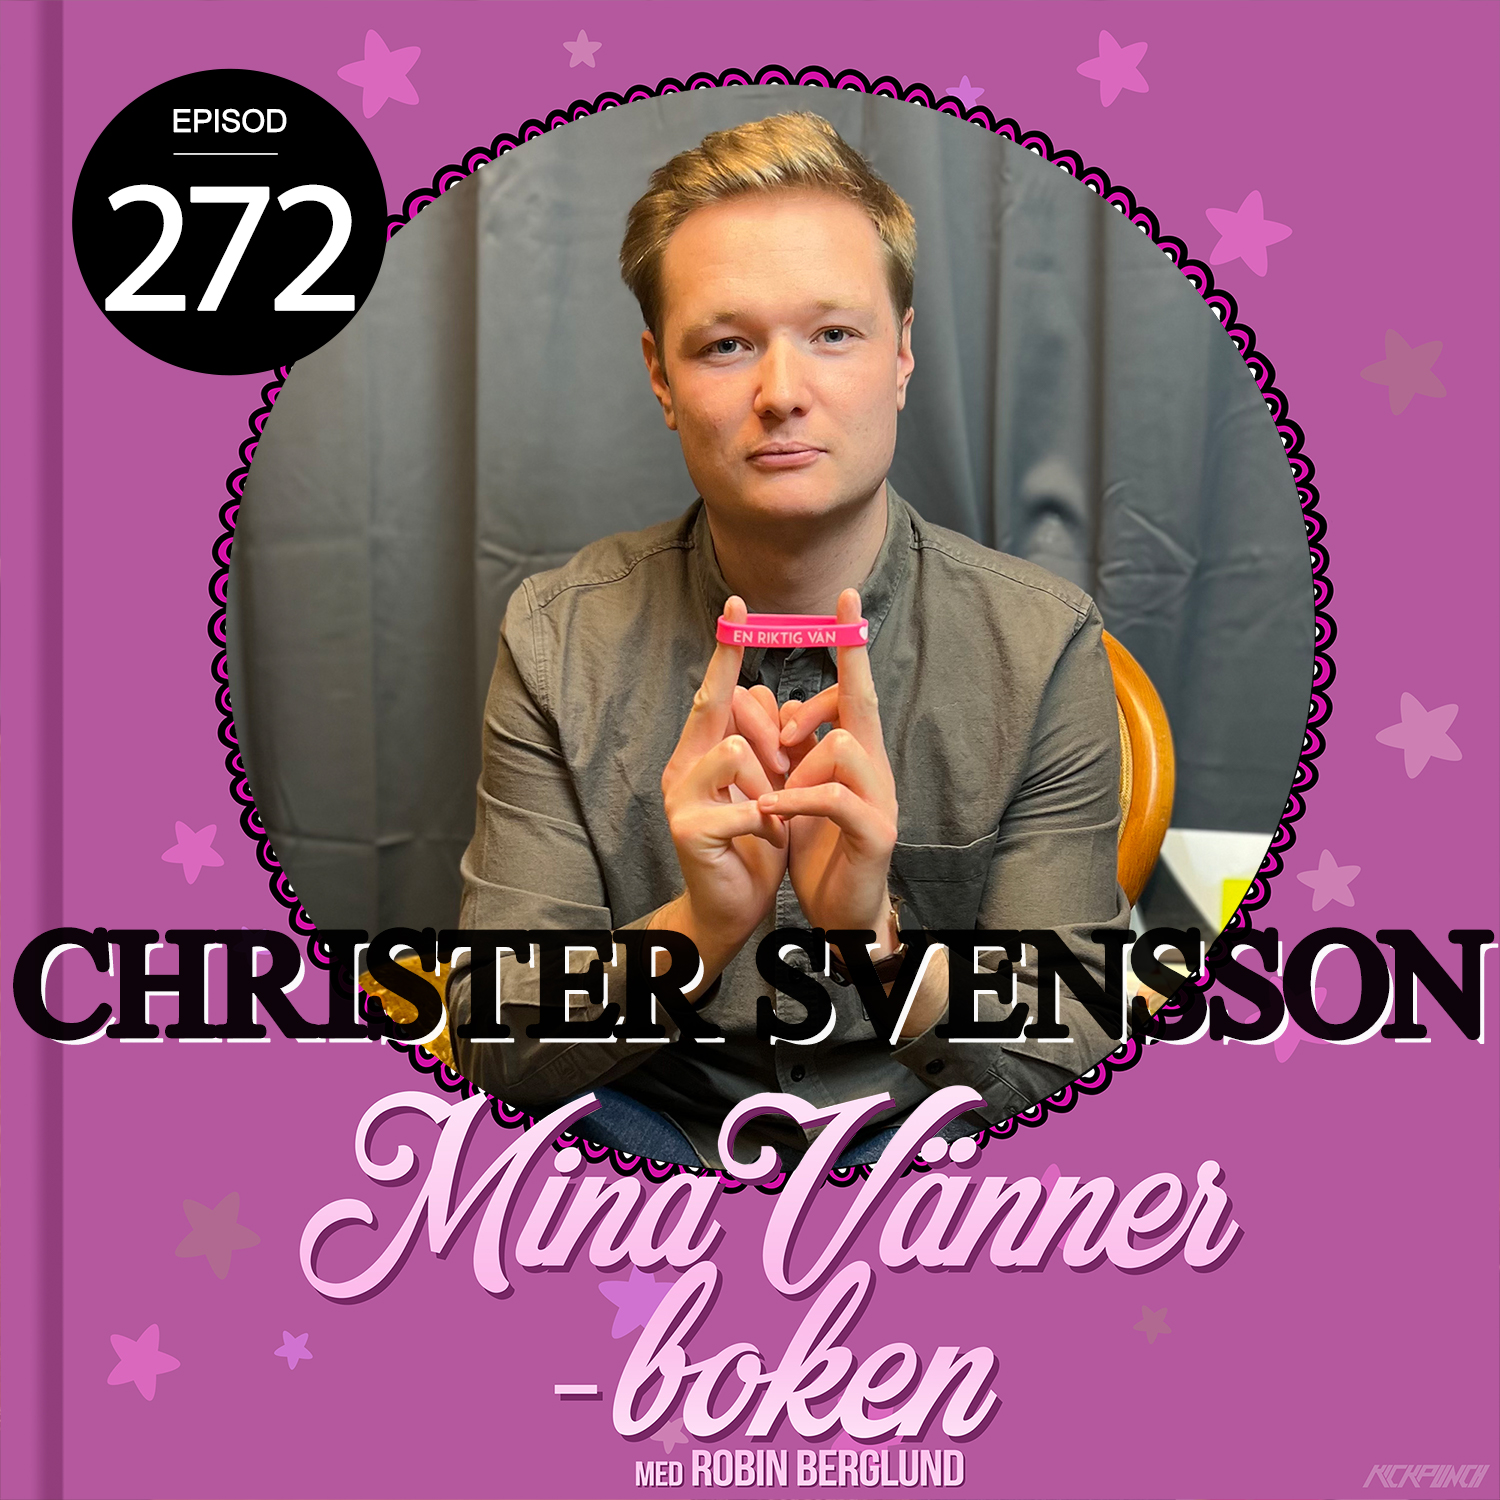 Christer Svensson